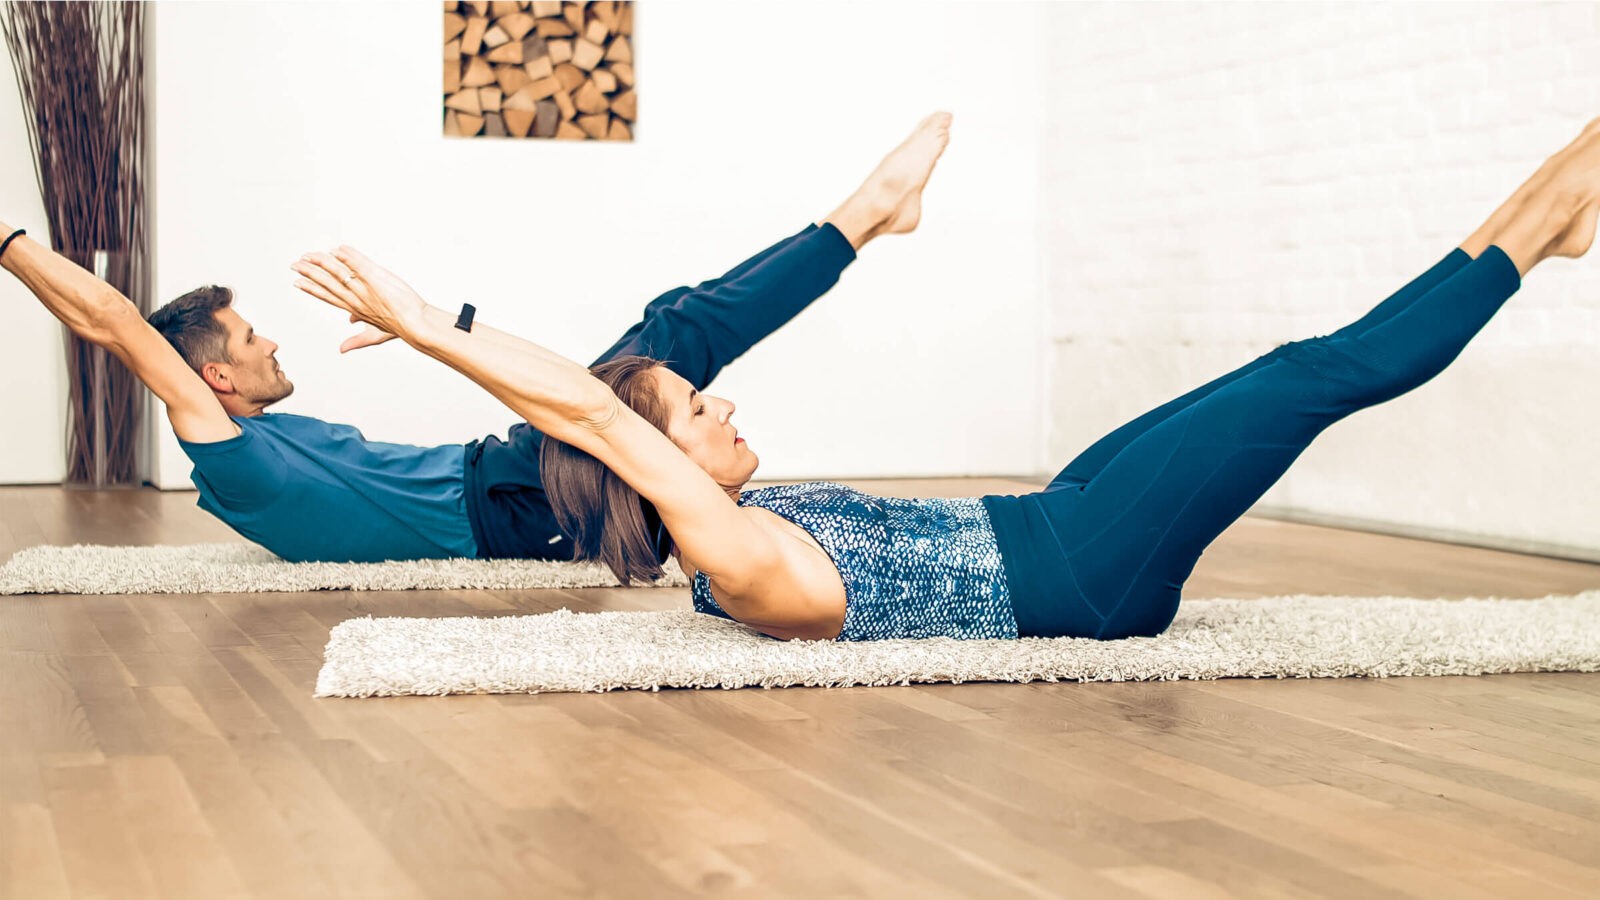 Le Double leg stretch : un exercice de Pilates à pratiquer pour bien  renforcer son dos ! - France Bleu